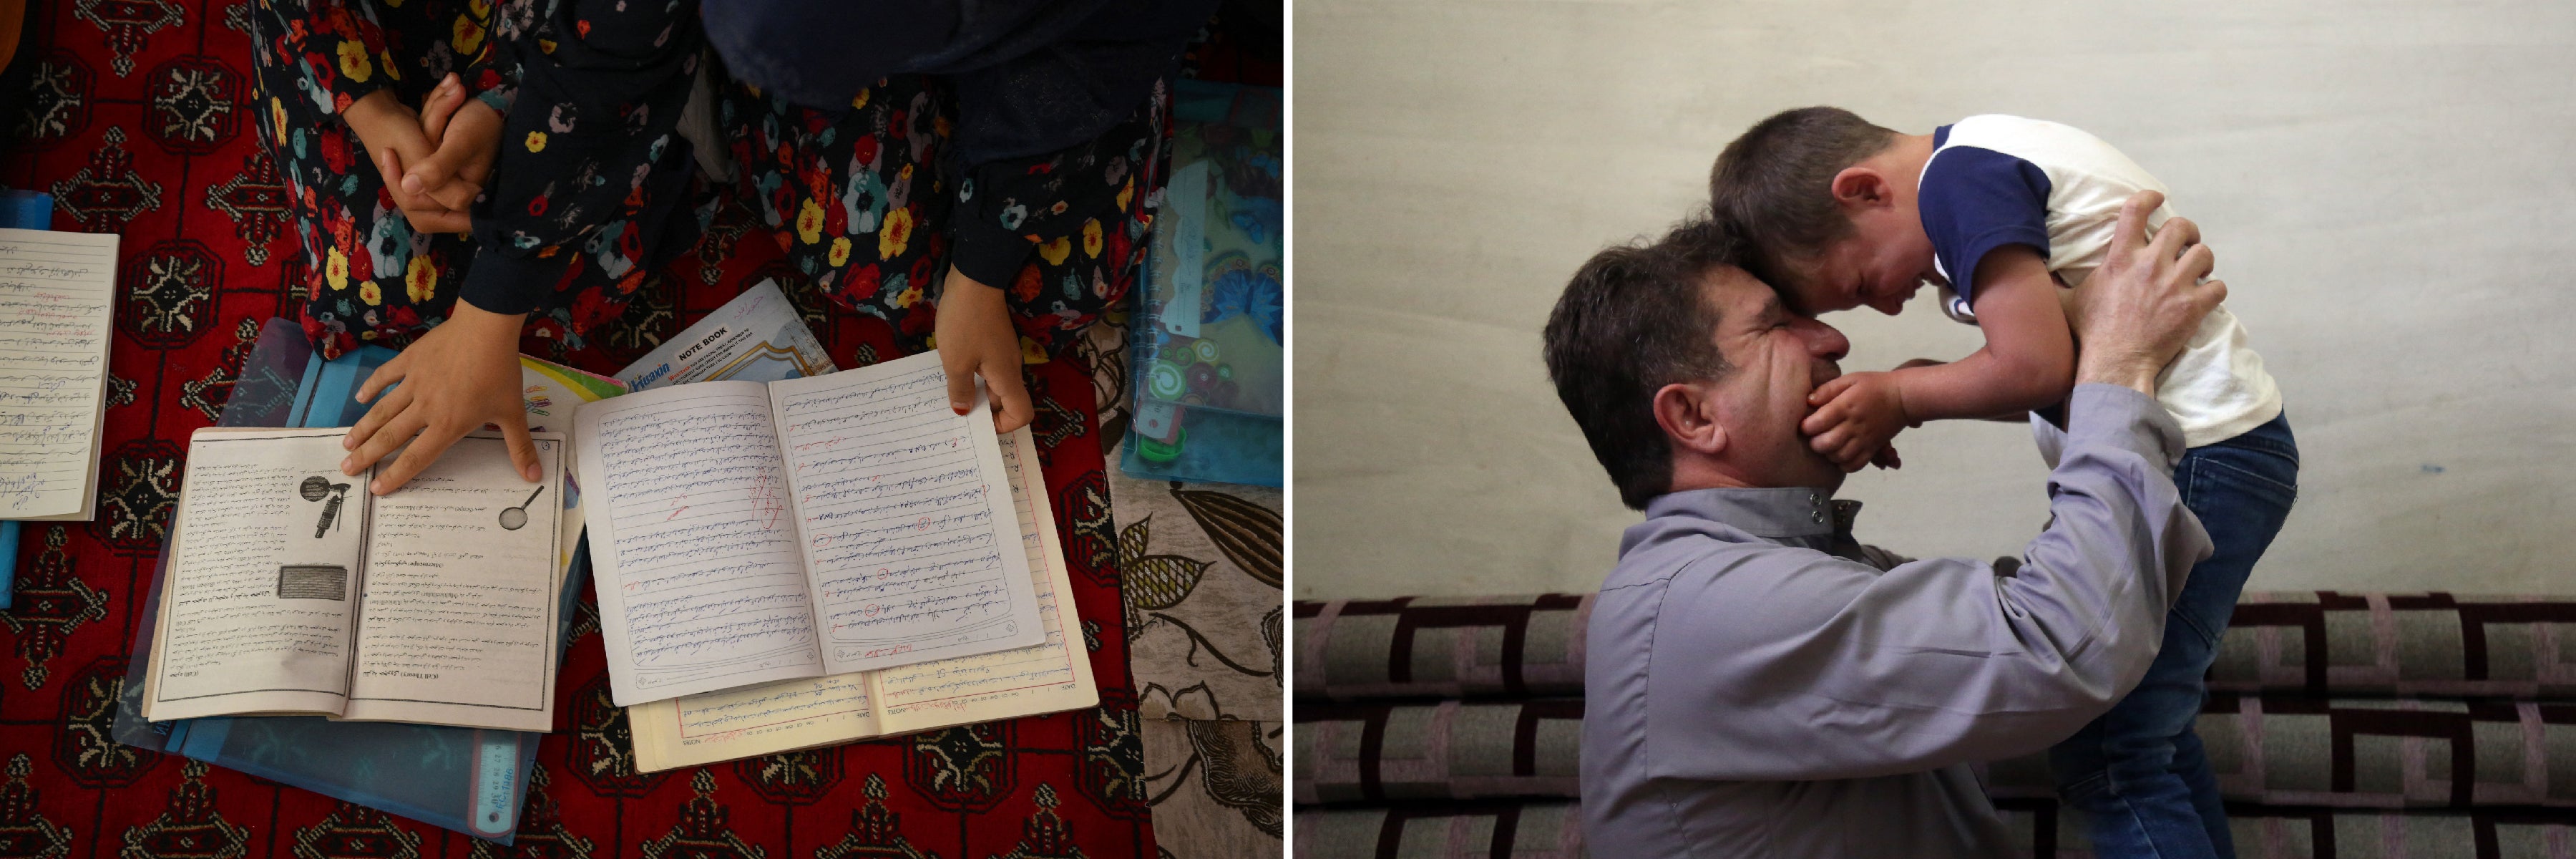 À GAUCHE : Deux filles afghanes montraient leurs livres et cahiers, dans une école secrète dans un lieu non divulgué en Afghanistan, le 25 juillet 2022. © 2022 Daniel Leal/AFP/Getty Images. À DROITE : Un homme syrien soulevait son fils Ibrahim, âgé de 5 ans et atteint d'autisme, à Idlib en juin 2022. Les enfants handicapés piégés dans la guerre en Syrie courent un plus grand risque de souffrances, n’ayant que peu ou pas accès aux soins de santé de base, à l'éducation, à l'aide humanitaire, aux dispositifs d